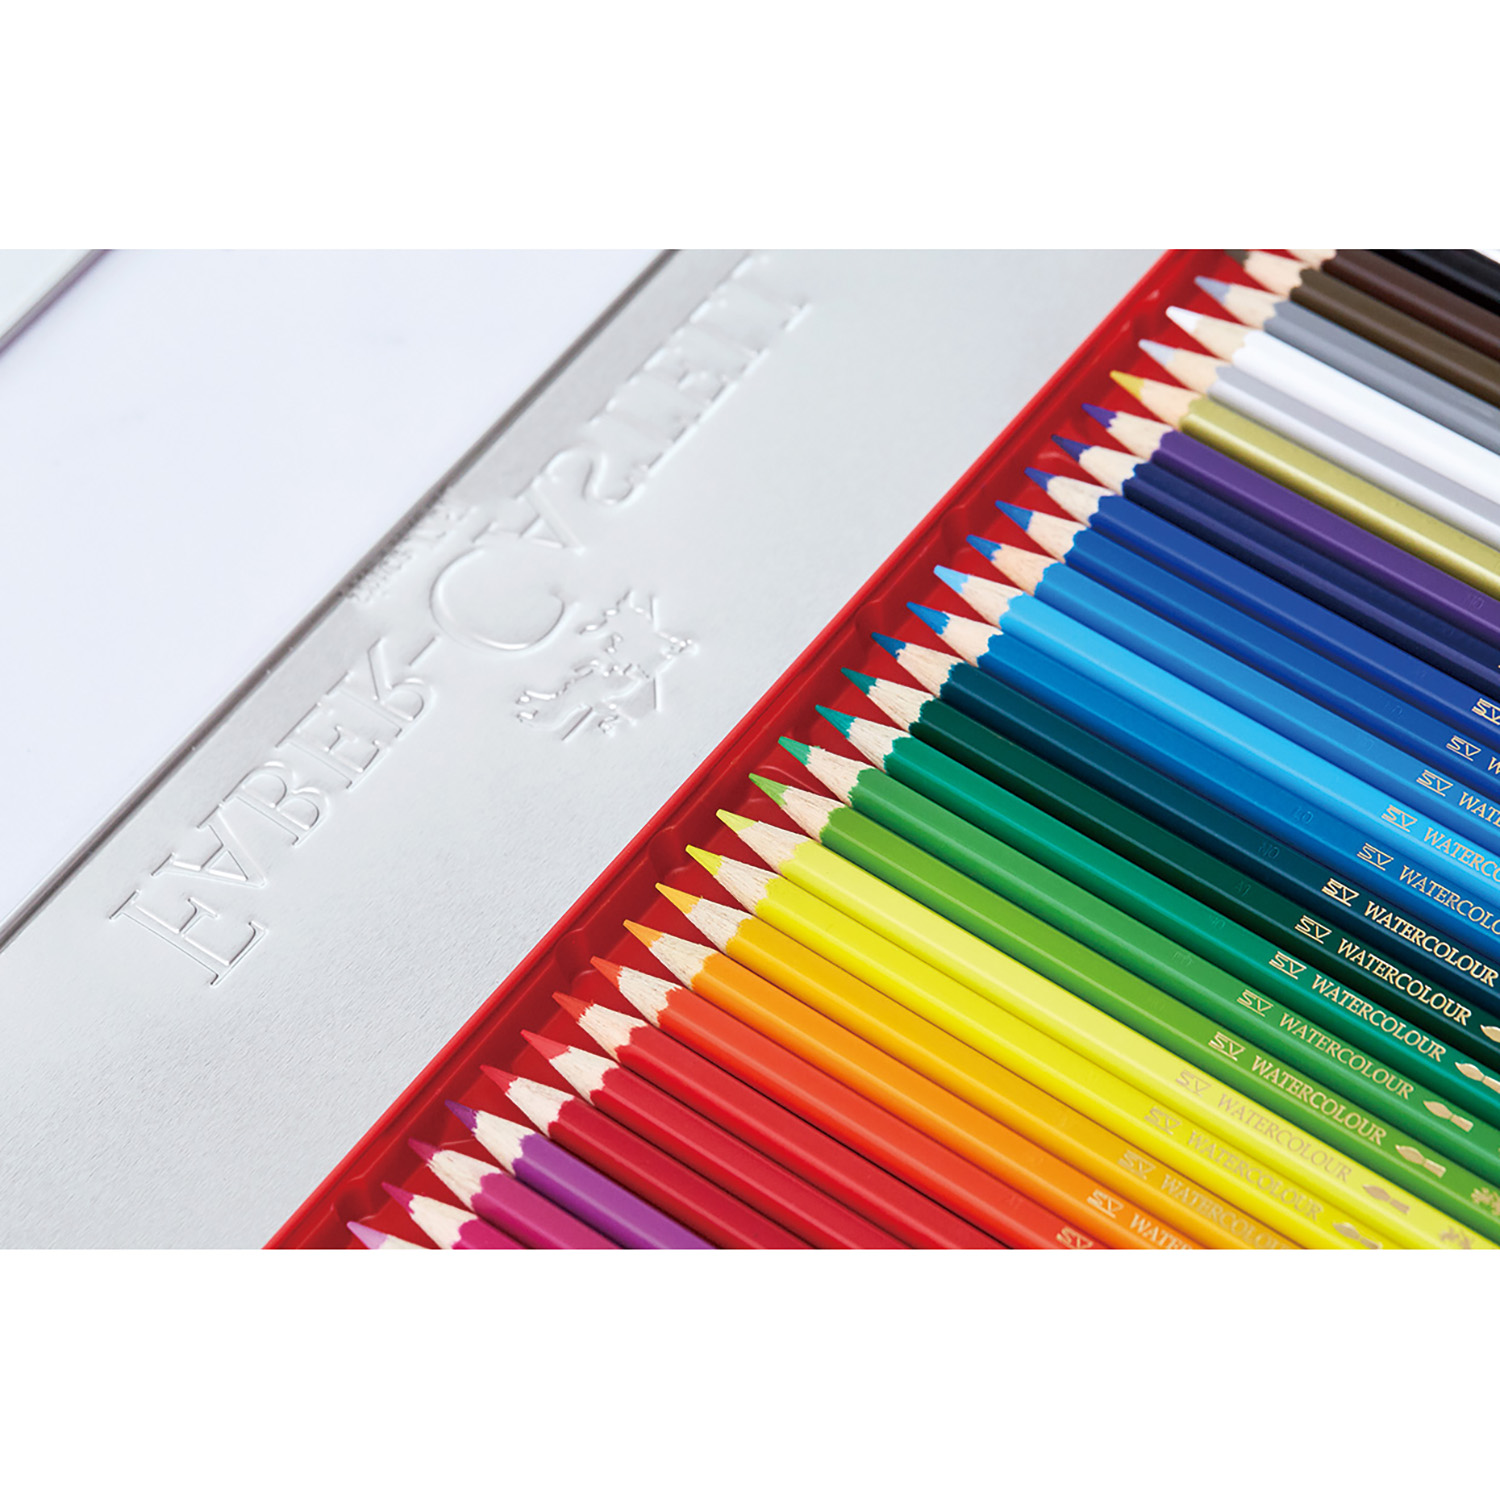 ファーバーカステル 色鉛筆 48色セット|TFC-CP/48C|商品カタログ|シヤチハタ株式会社